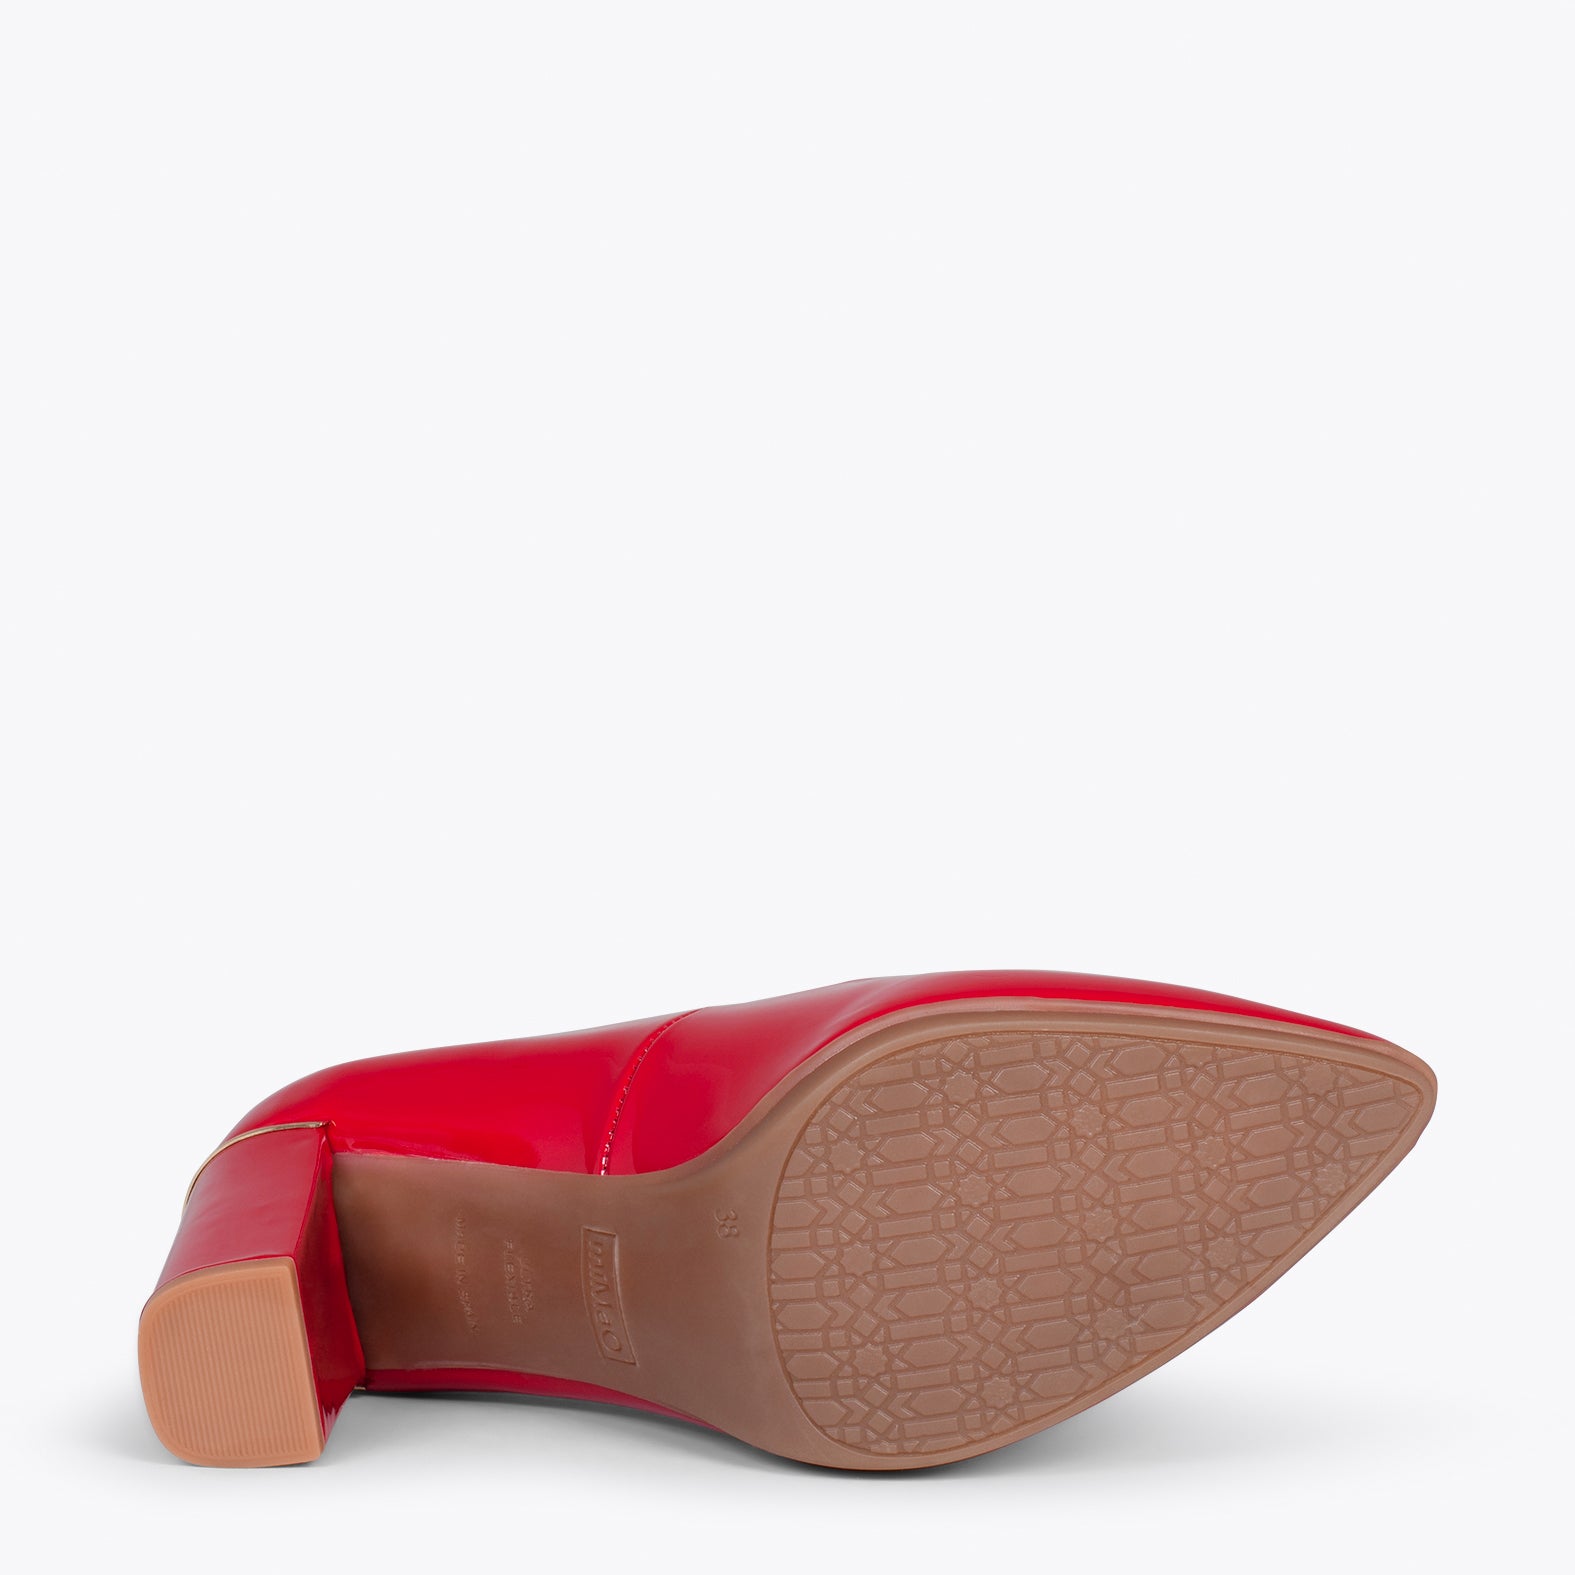 URBAN CHAROL – Zapatos de tacón de charol con adorno metálico ROJO